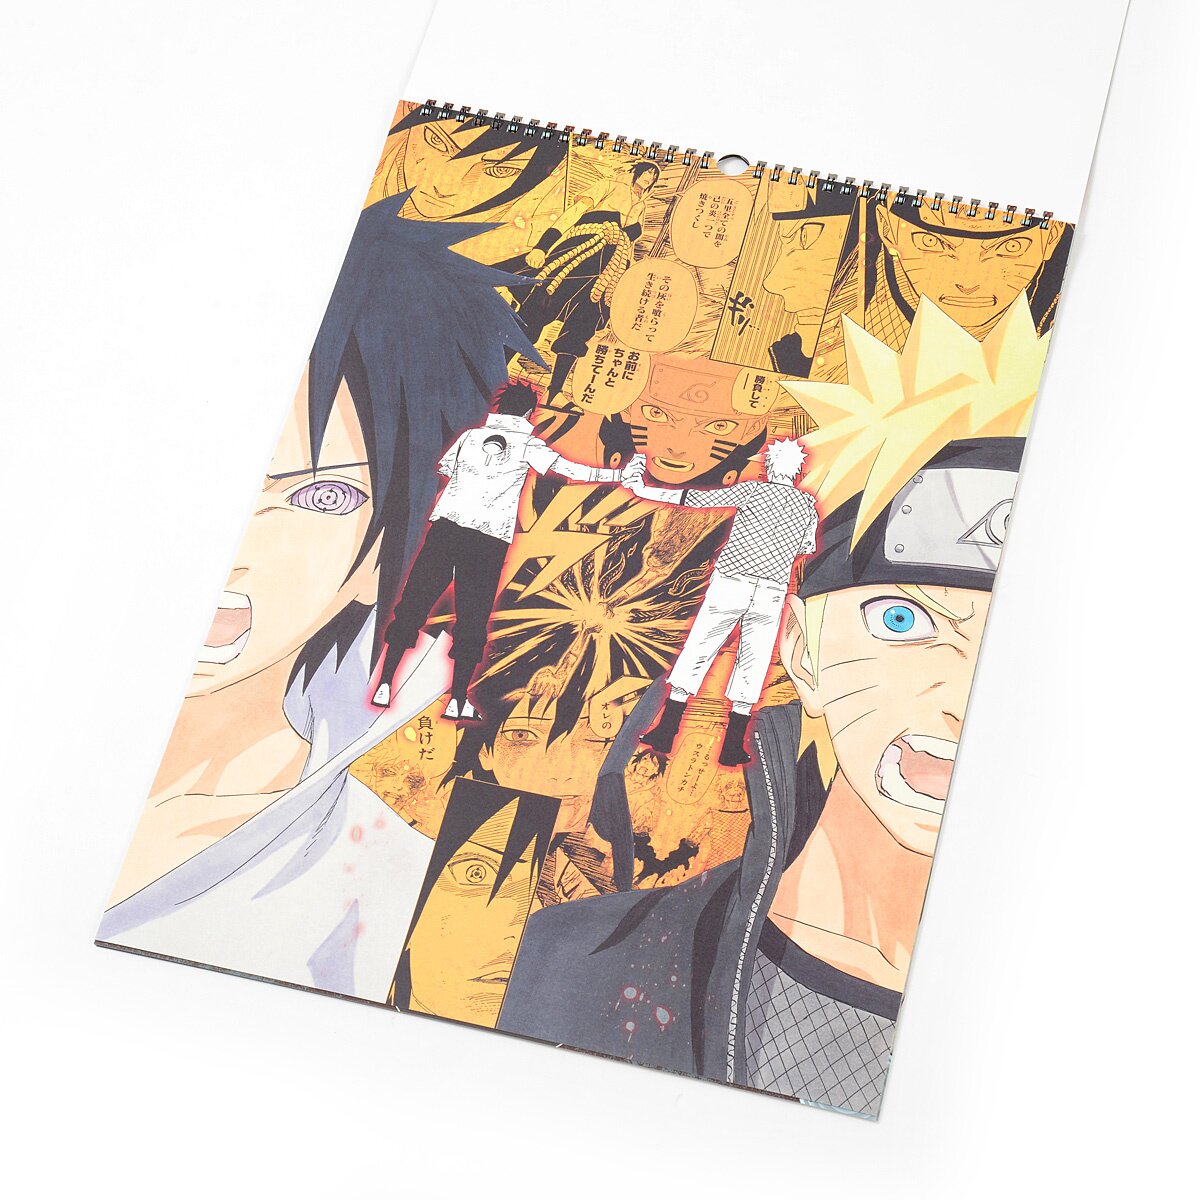 Naruto 2017 Calendar - Tokyo Otaku Mode (TOM)